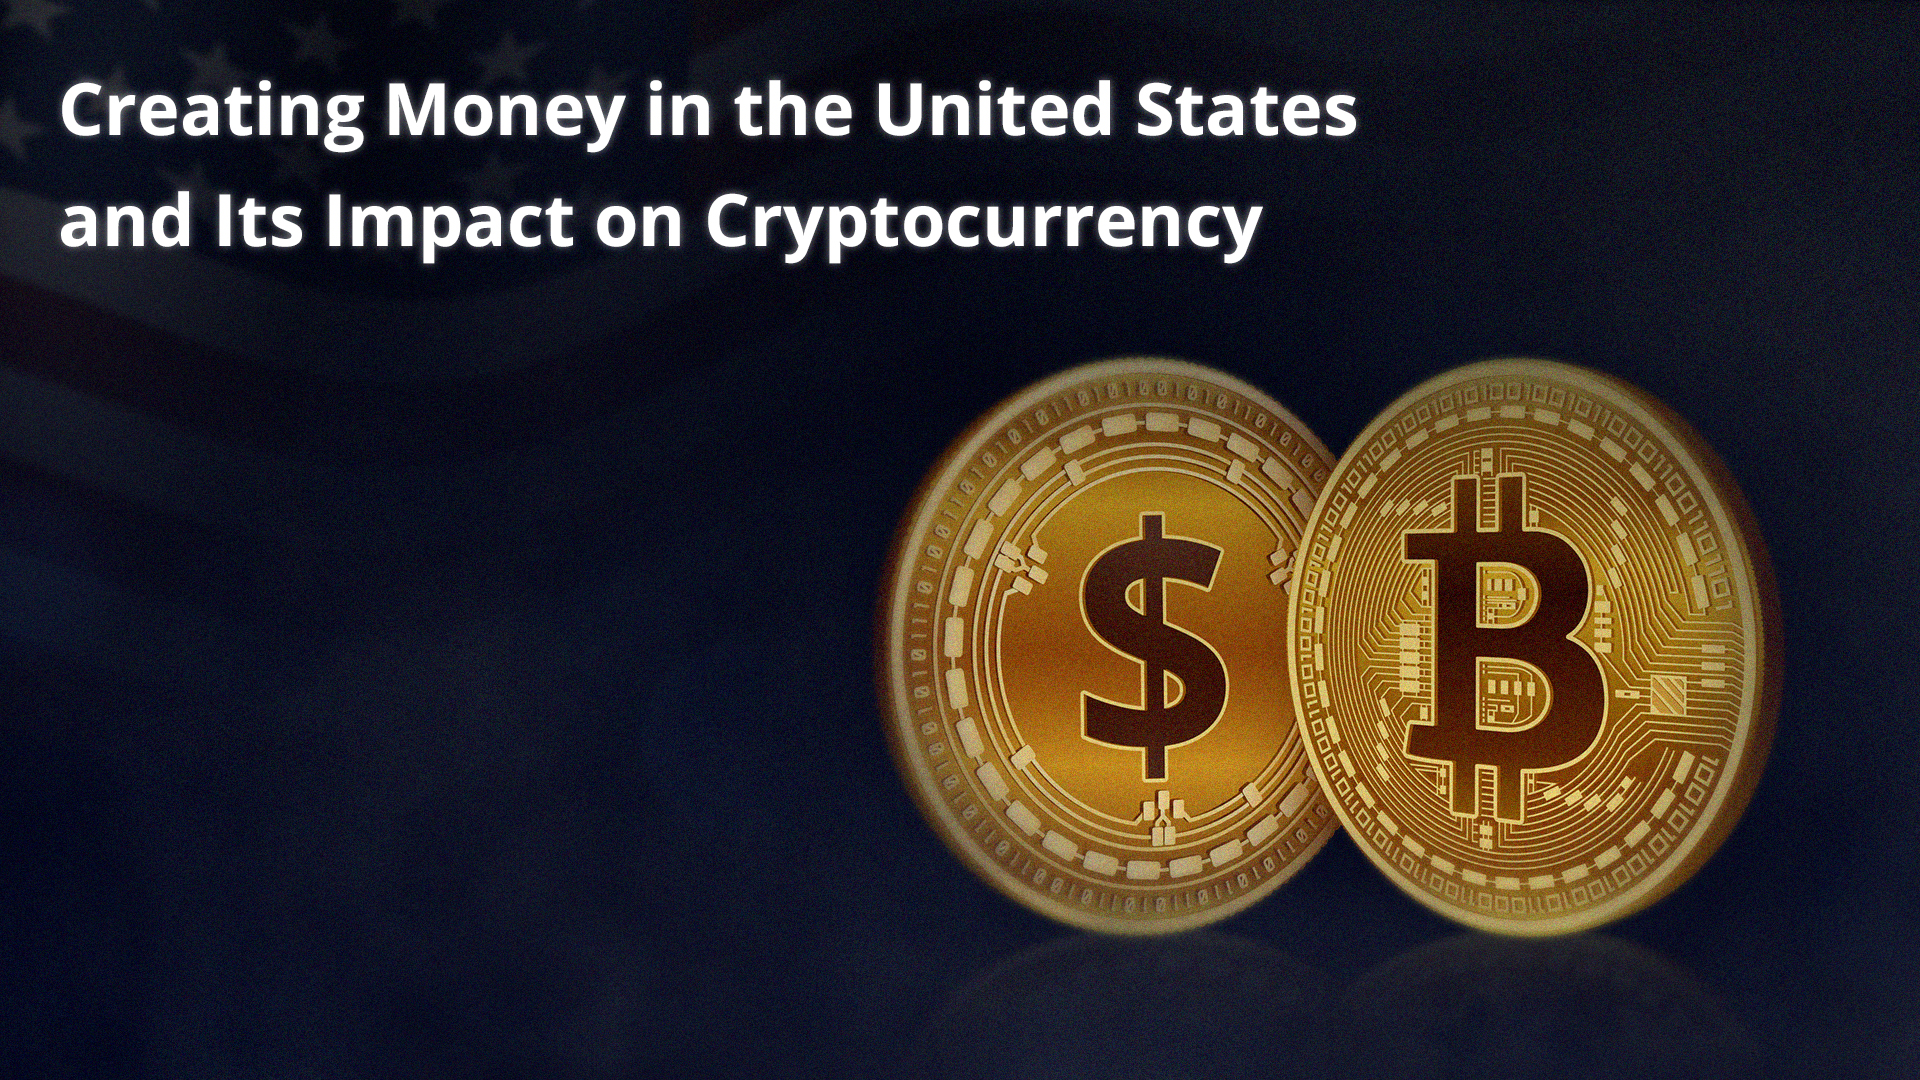 La création de monnaie aux États-Unis et son impact sur les crypto-monnaies.